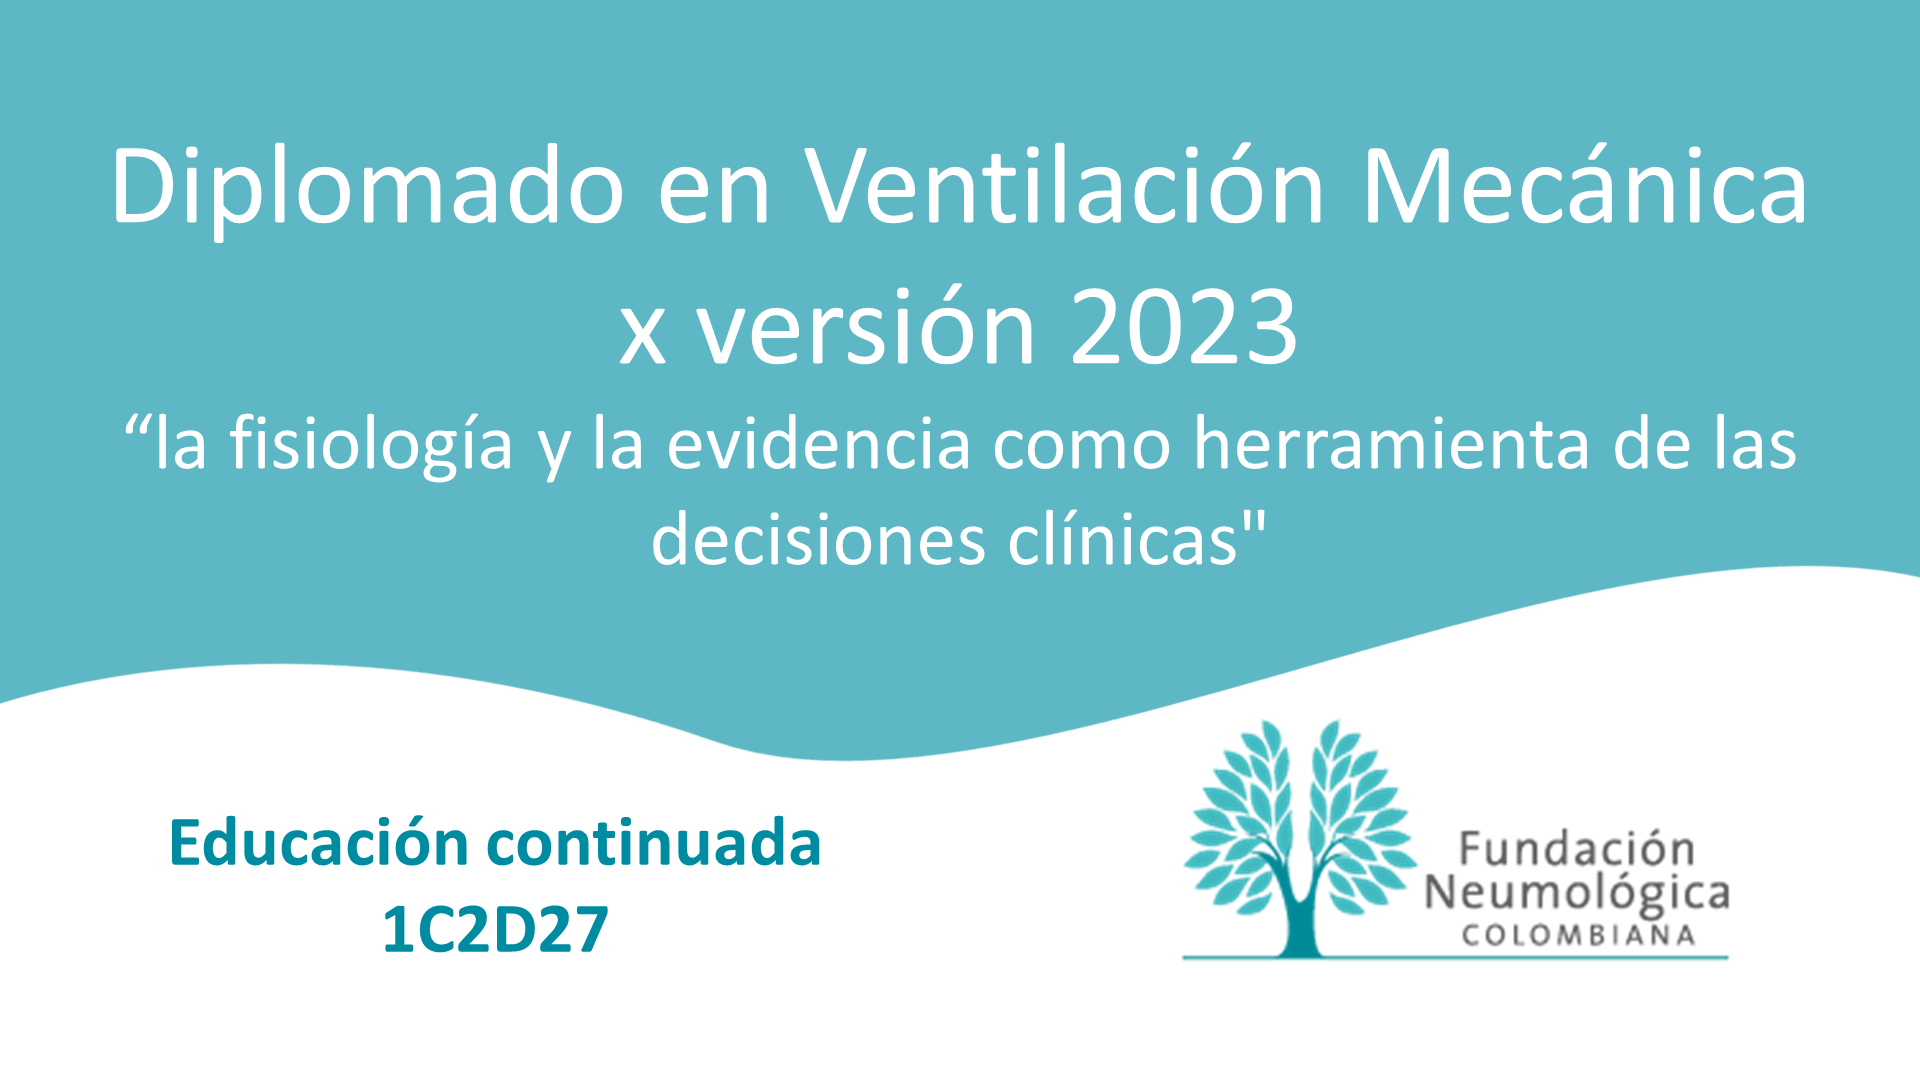 Diplomado en Ventilación Mecánica x versión 2023 “la fisiología y la evidencia como herramienta de las decisiones clínicas